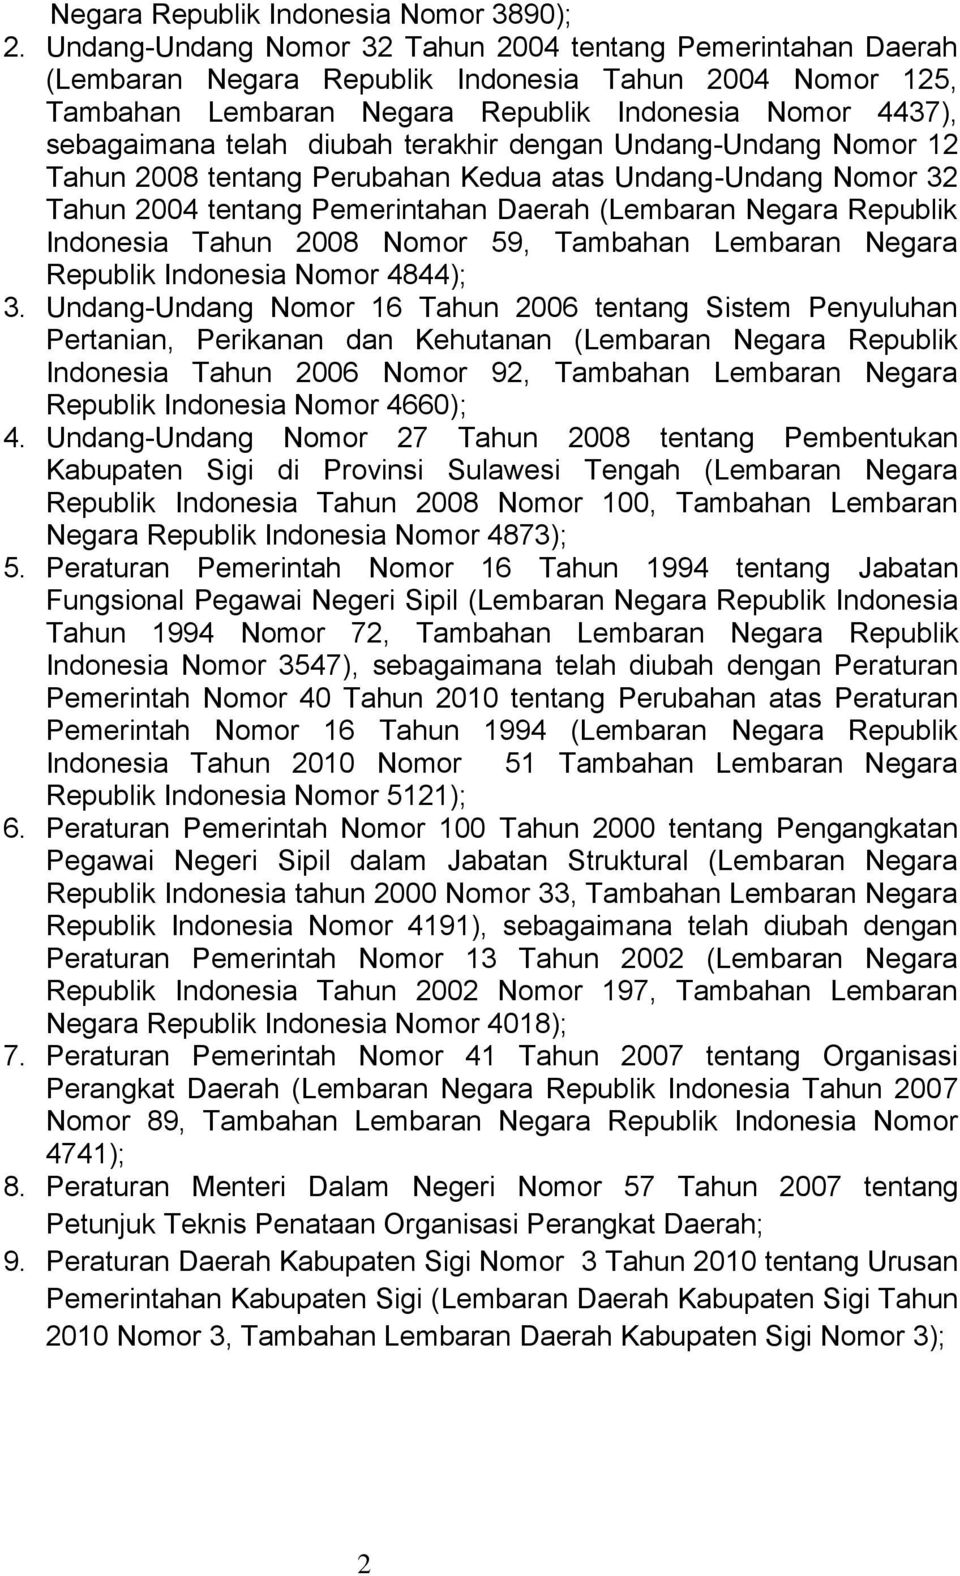 diubah terakhir dengan Undang-Undang Nomor 12 Tahun 2008 tentang Perubahan Kedua atas Undang-Undang Nomor 32 Tahun 2004 tentang Pemerintahan Daerah (Lembaran Negara Republik Indonesia Tahun 2008